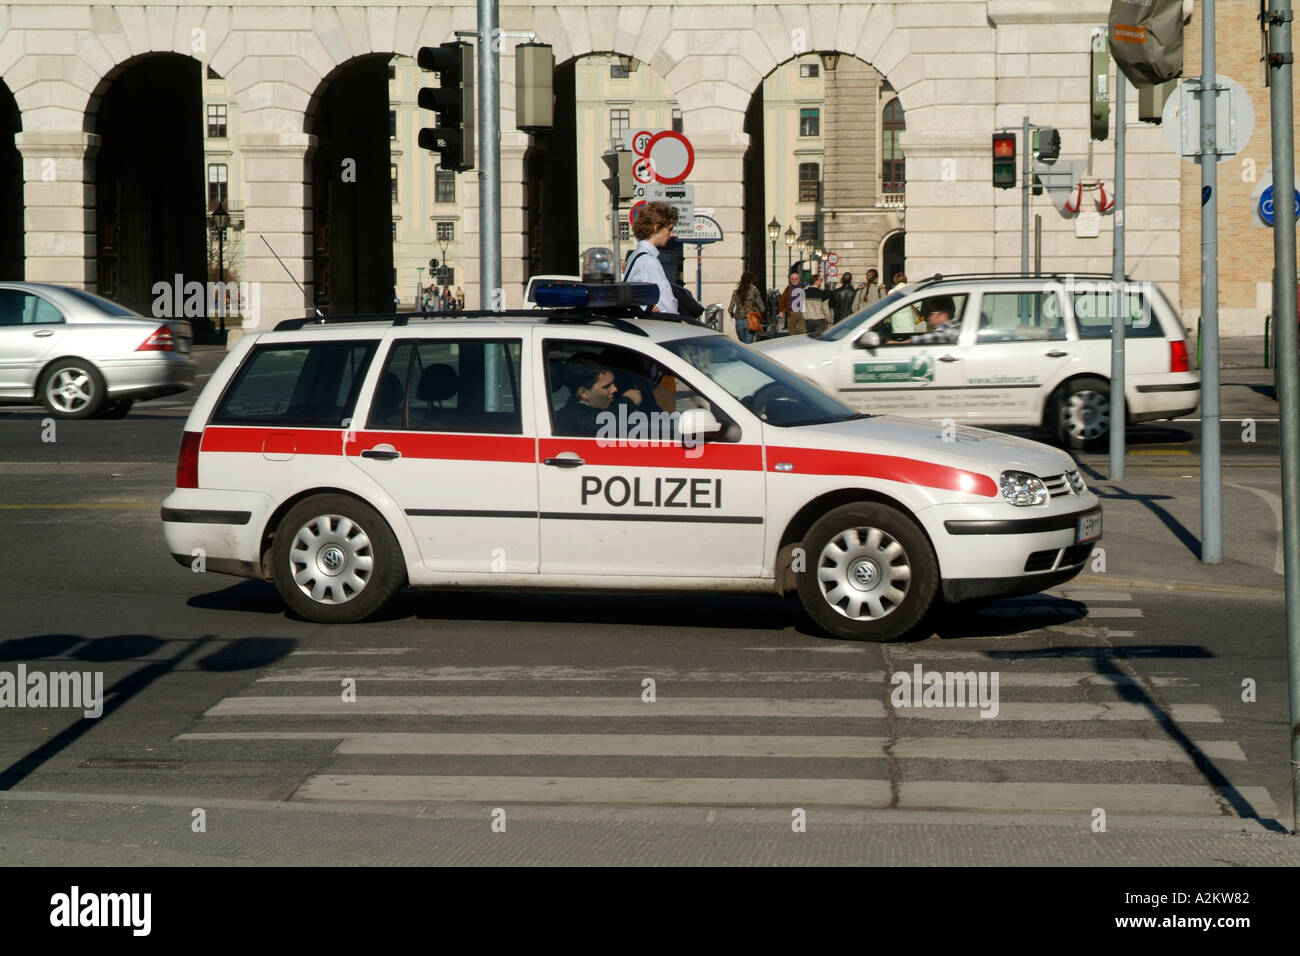 Österreichische Polizei-Auto in Wien Stockfotografie - Alamy